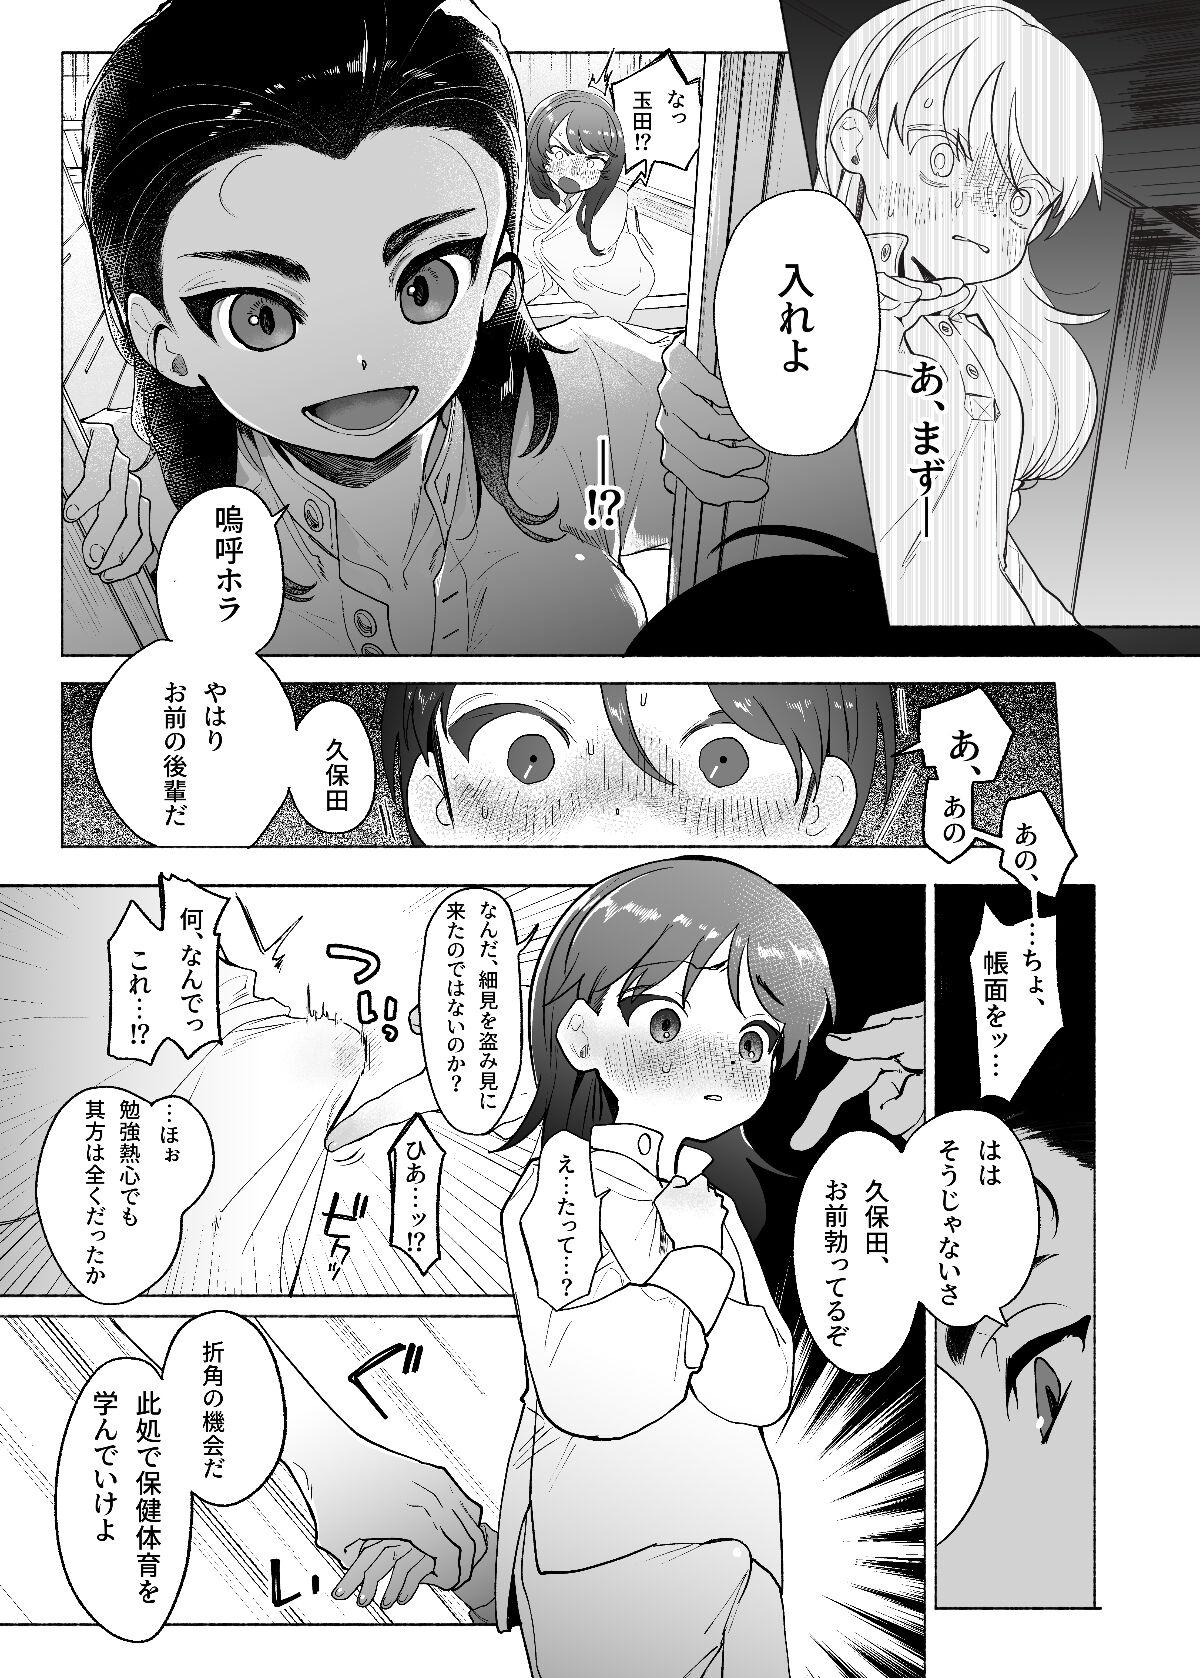 Camporn Ah, Watashi no Senpai Dono - Girls und panzer Vibrator - Page 8